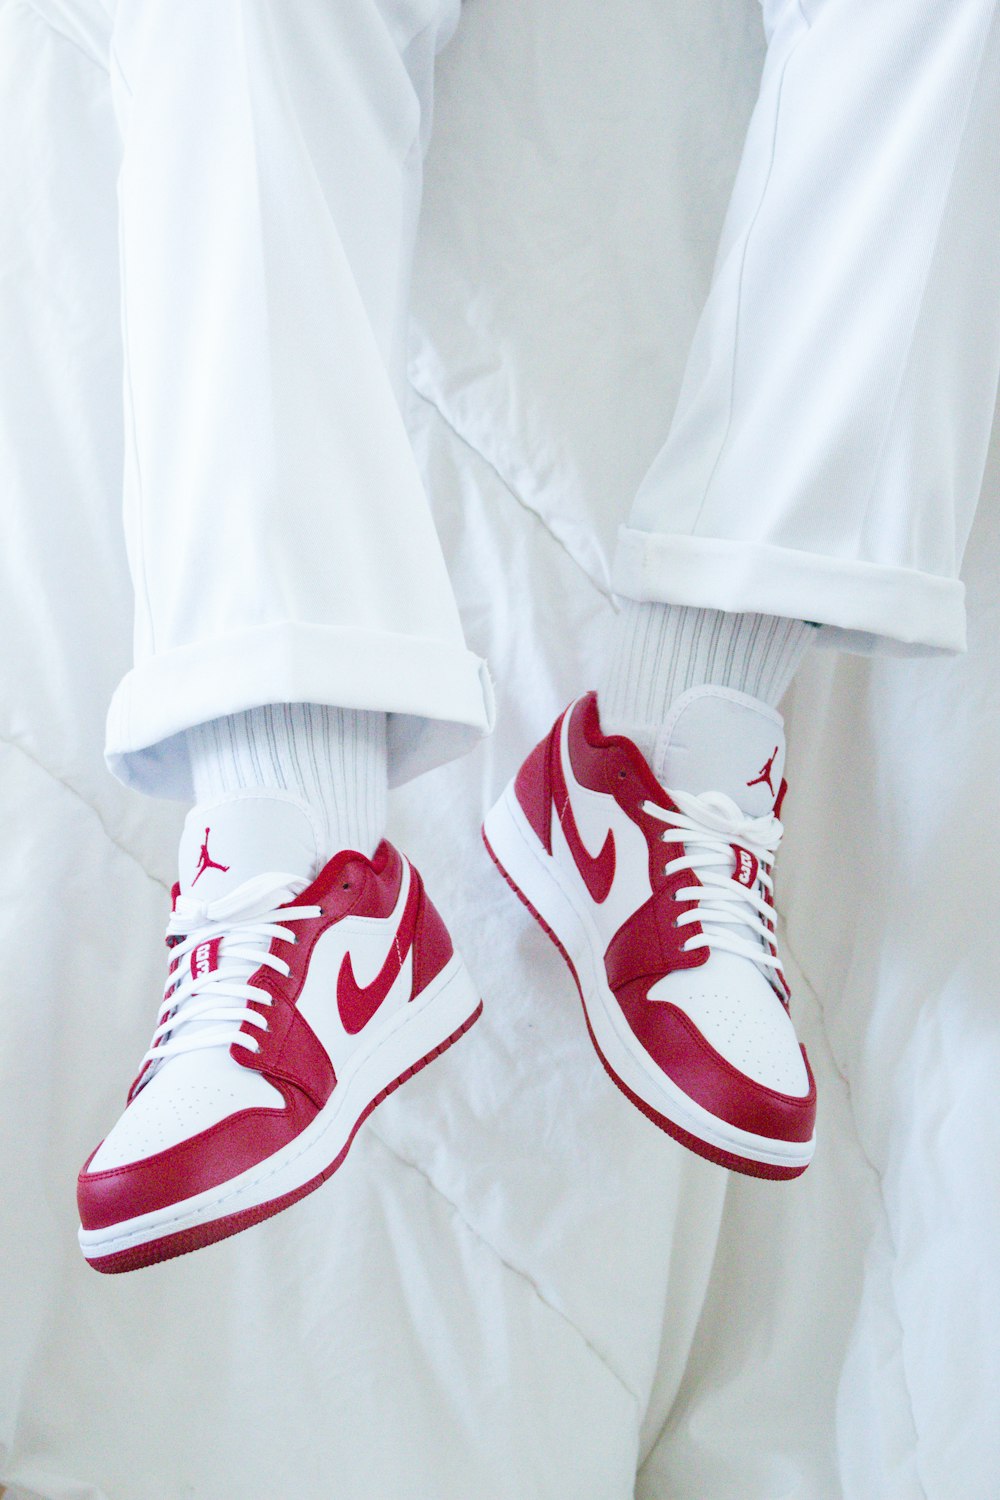 tenis rojos y blancos – Imagen Estilo gratis en Unsplash